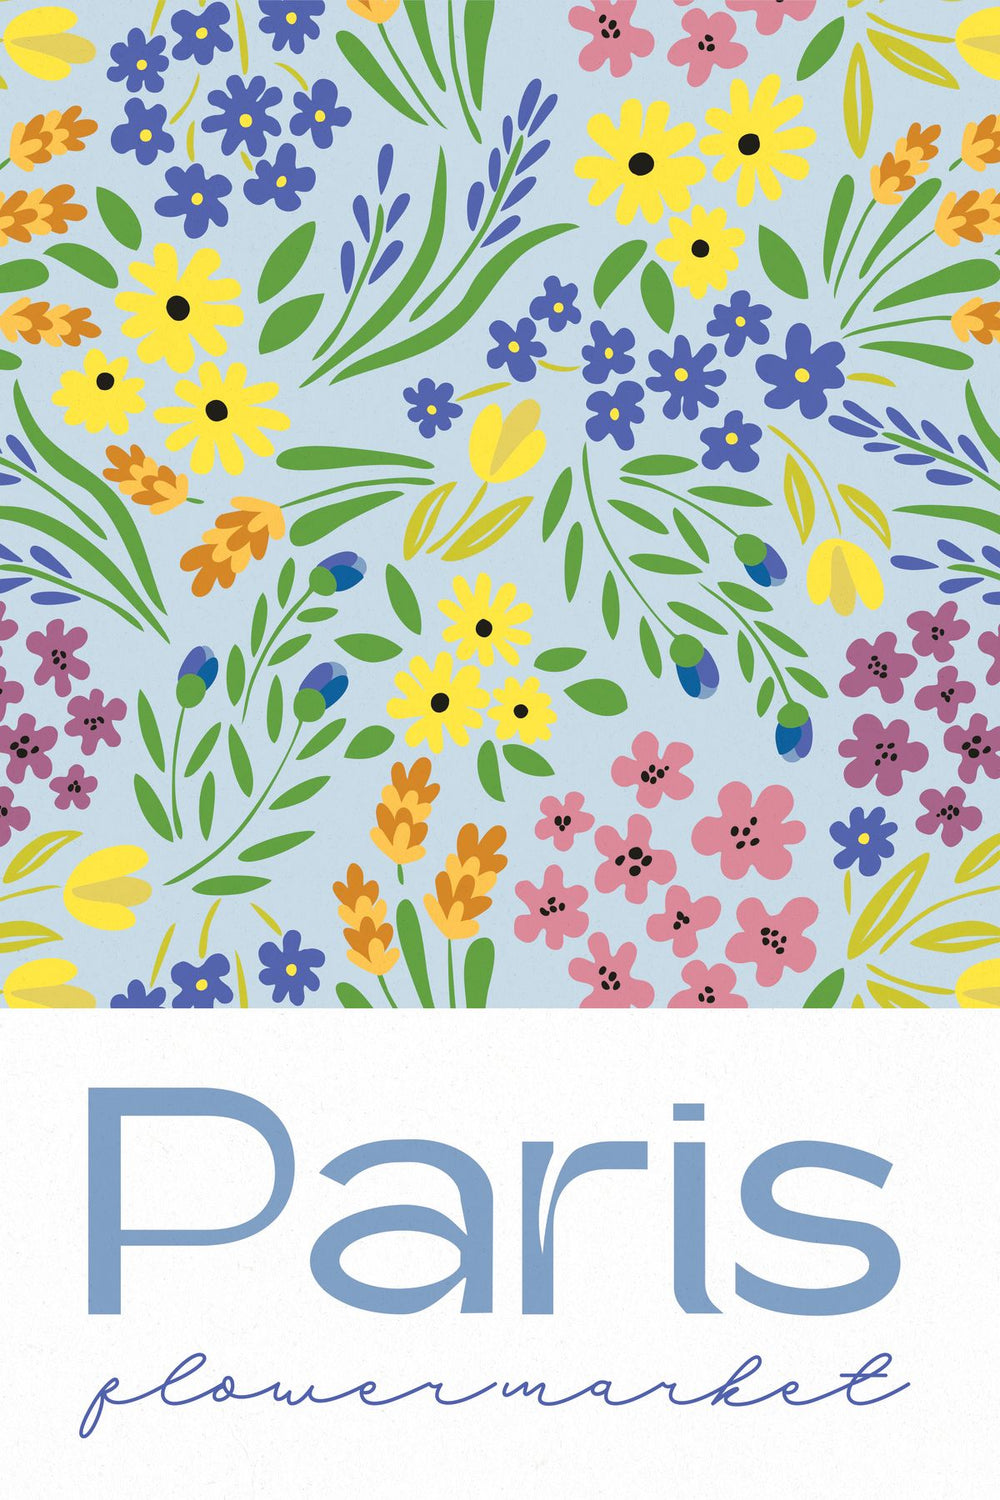 Paris Colorful Flower Market Poster